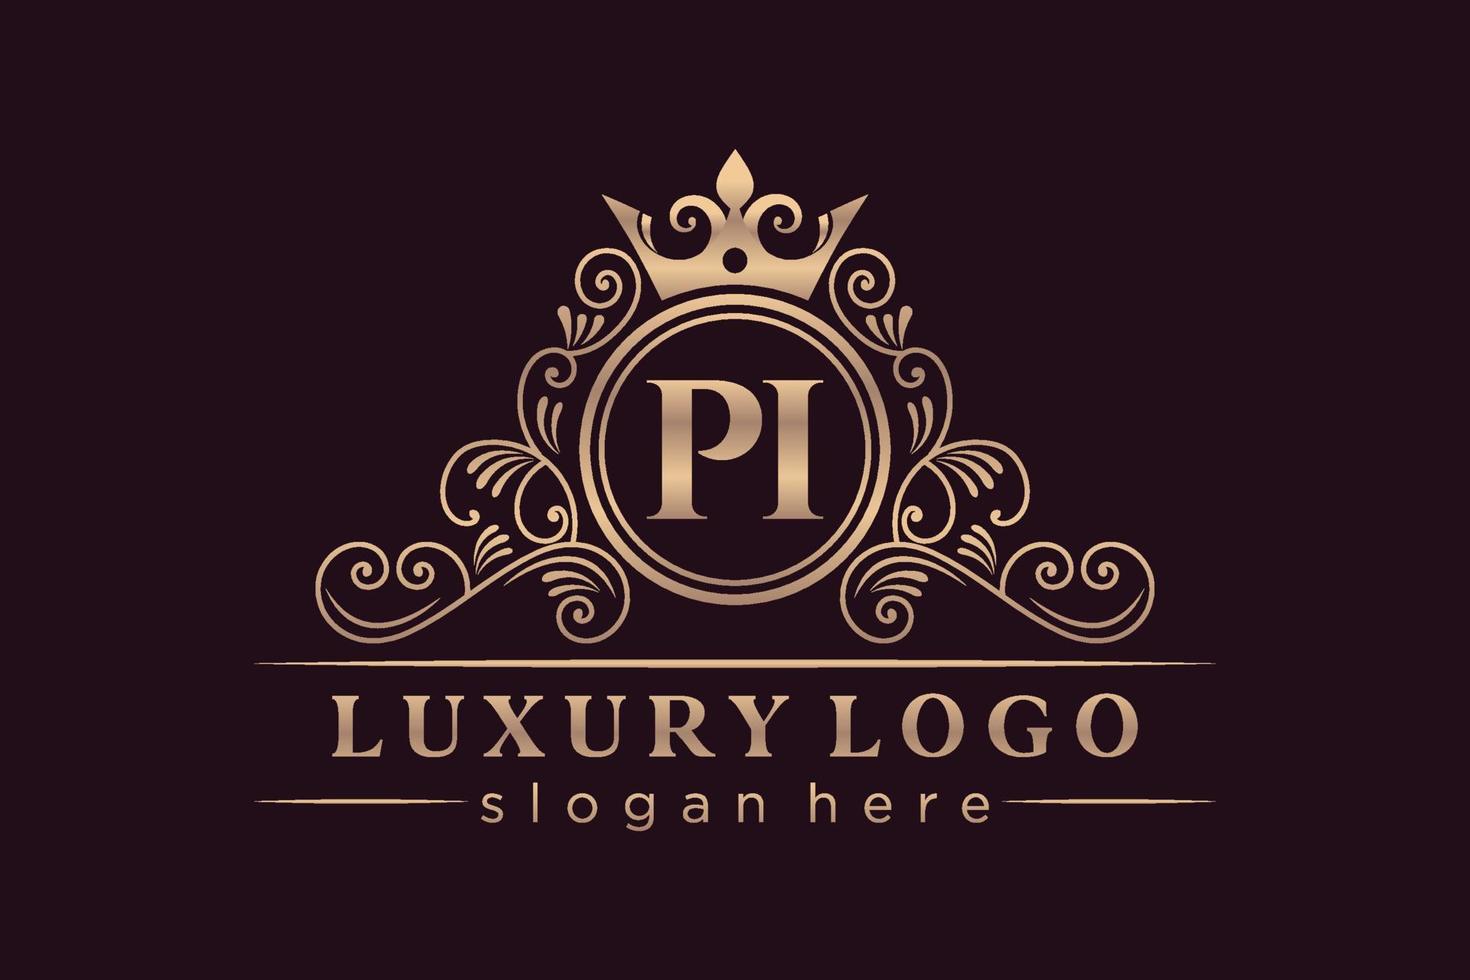 pi letra inicial oro caligráfico femenino floral dibujado a mano monograma heráldico antiguo estilo vintage diseño de logotipo de lujo vector premium